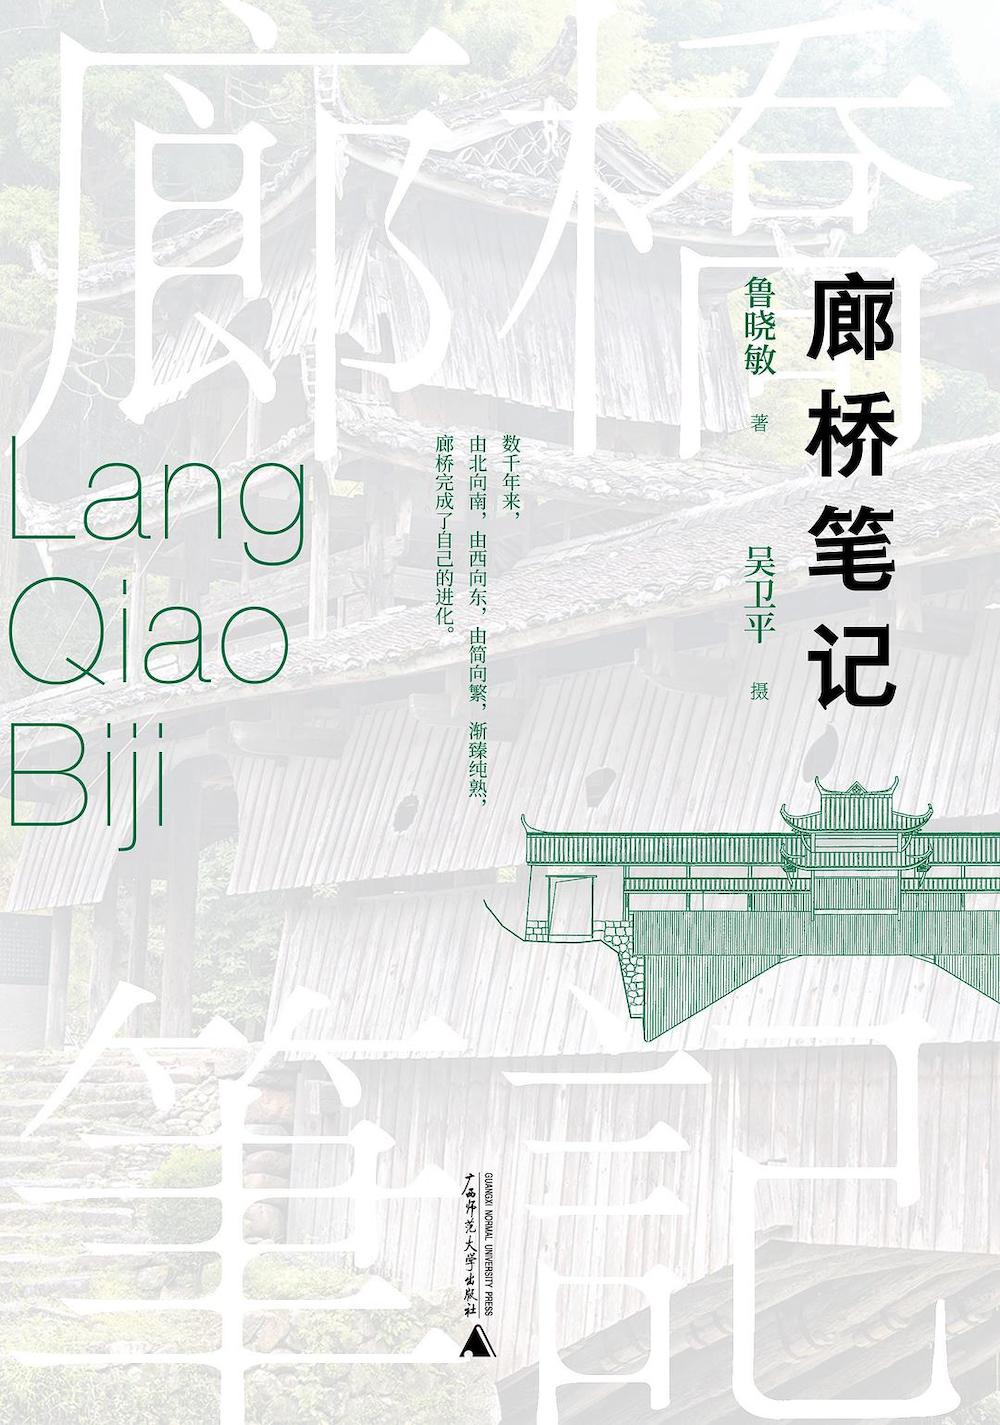 《廊桥笔记》 鲁晓敏（著） 吴卫平（摄）；广西师范大学出版社；2022年4月。 